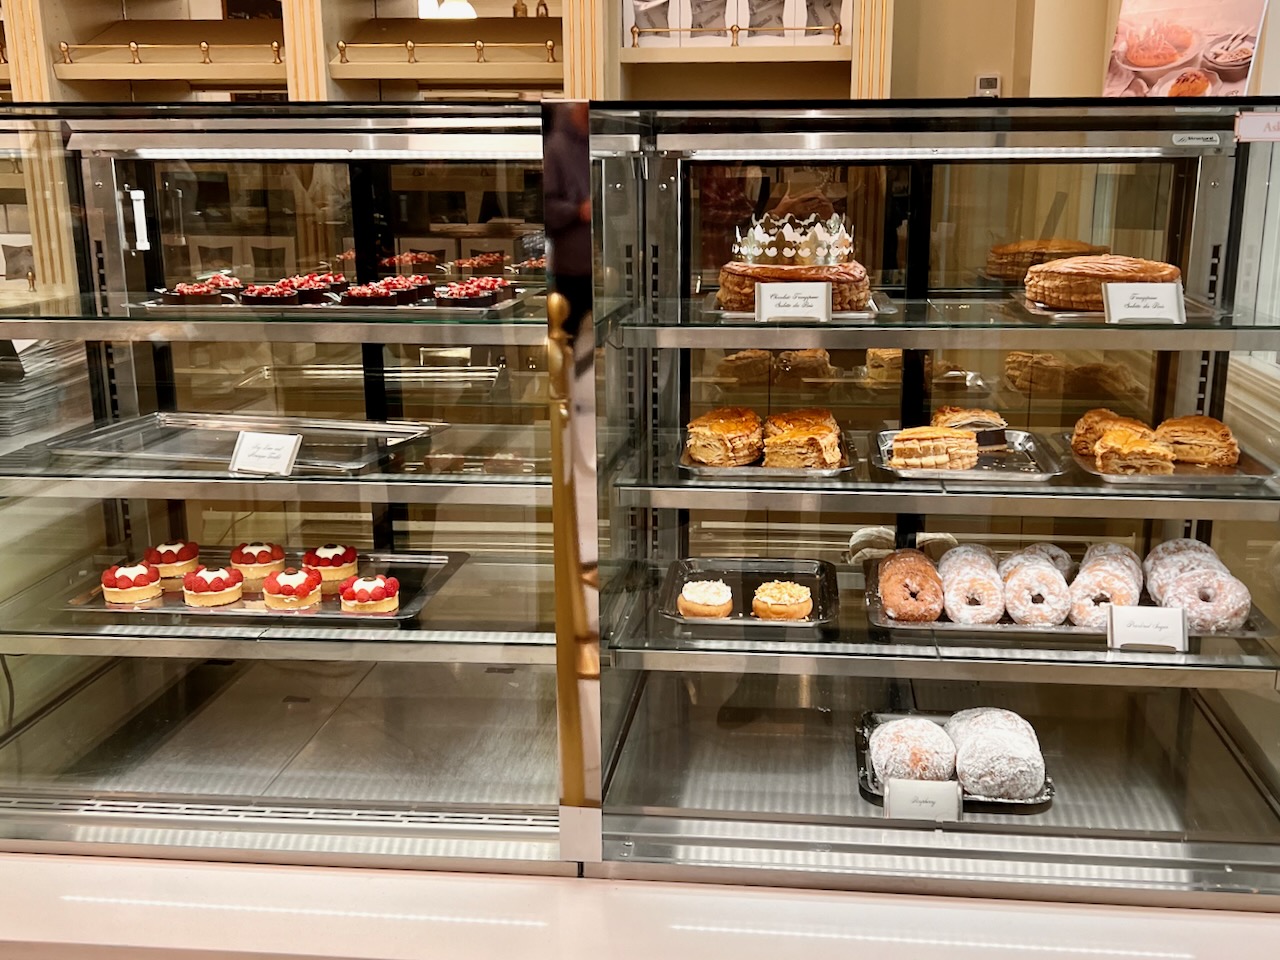 Sweet treats in a bakery showcase.